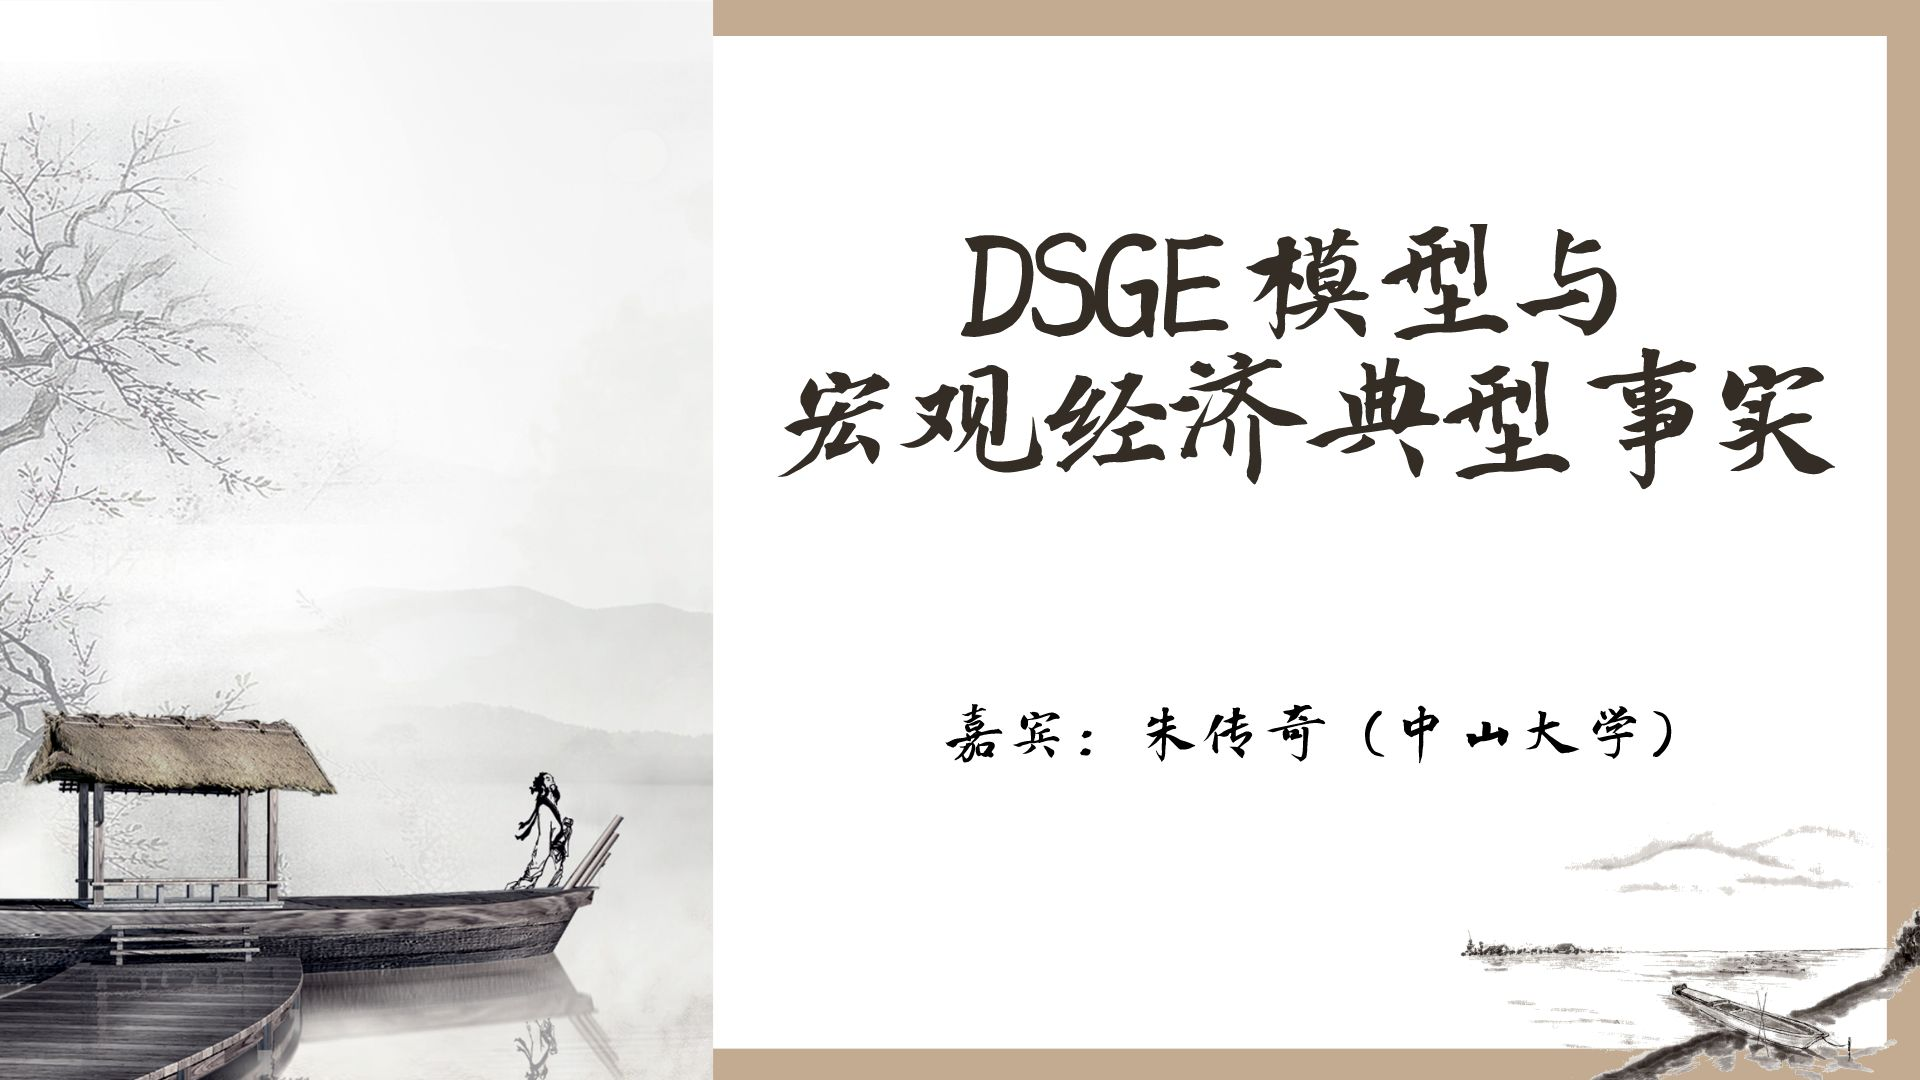 朱传奇：DSGE模型与宏观经济典型事实